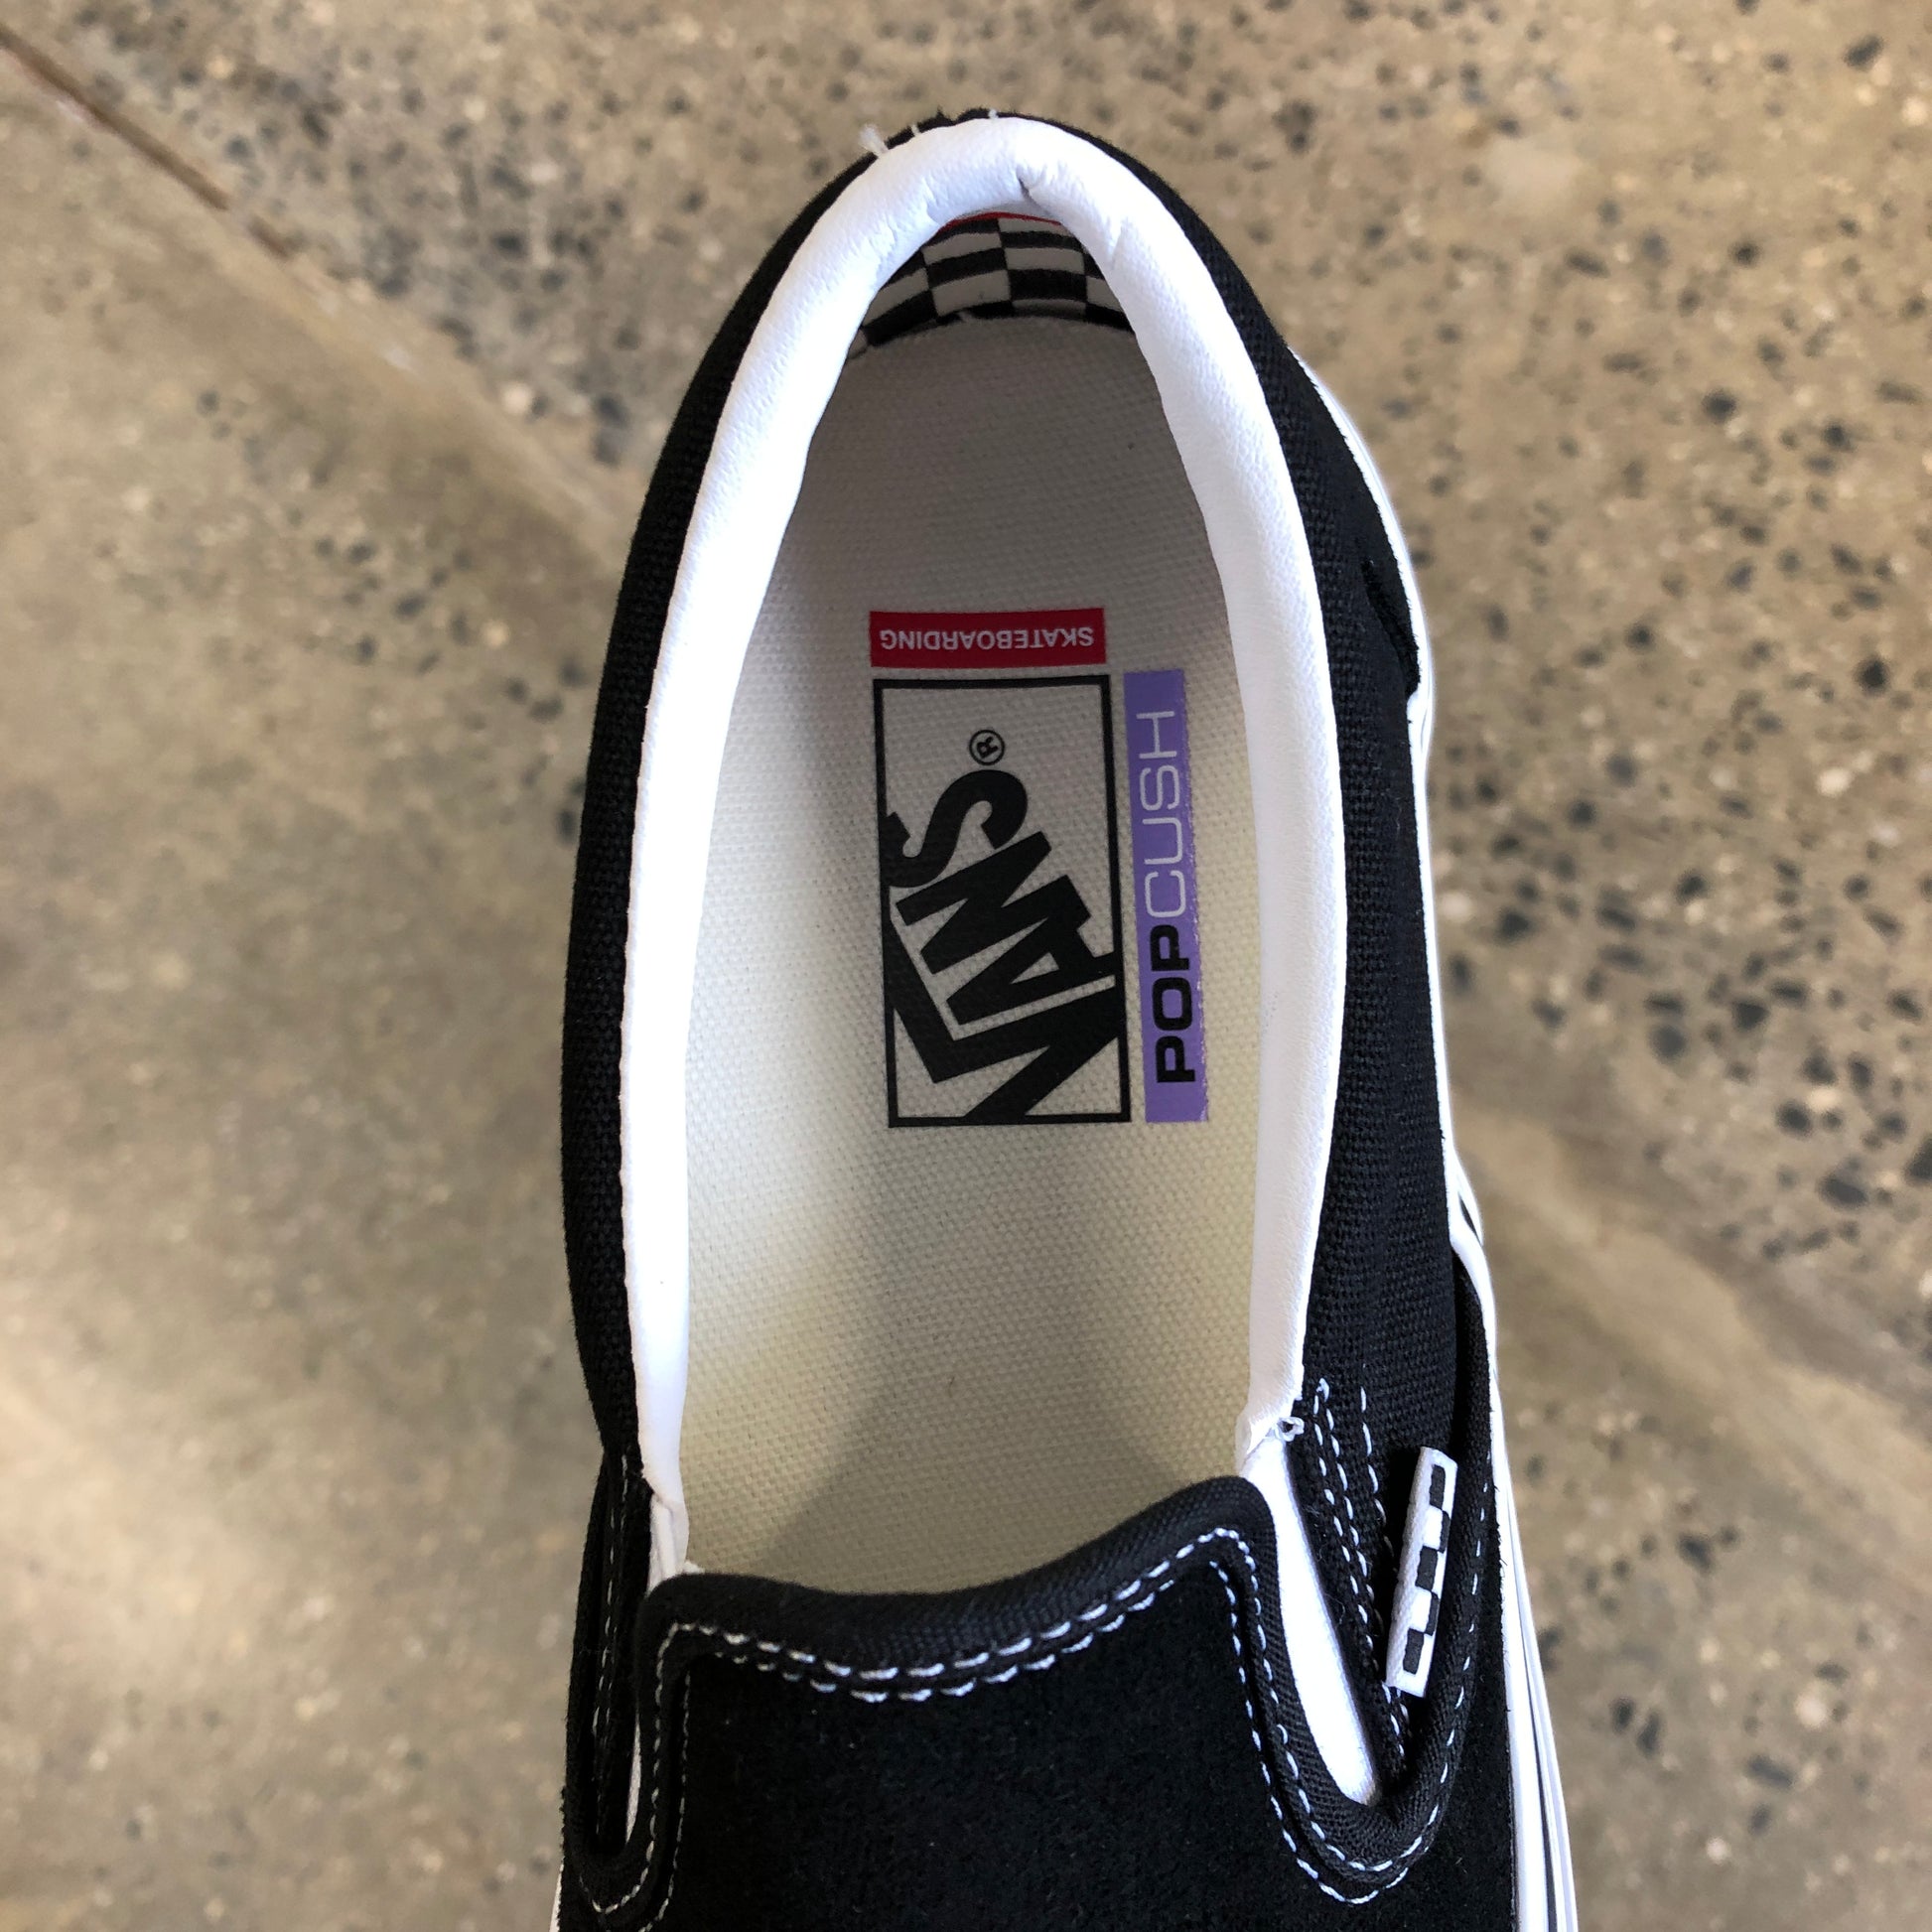 Vans Slip-On Skate Shoe - Black